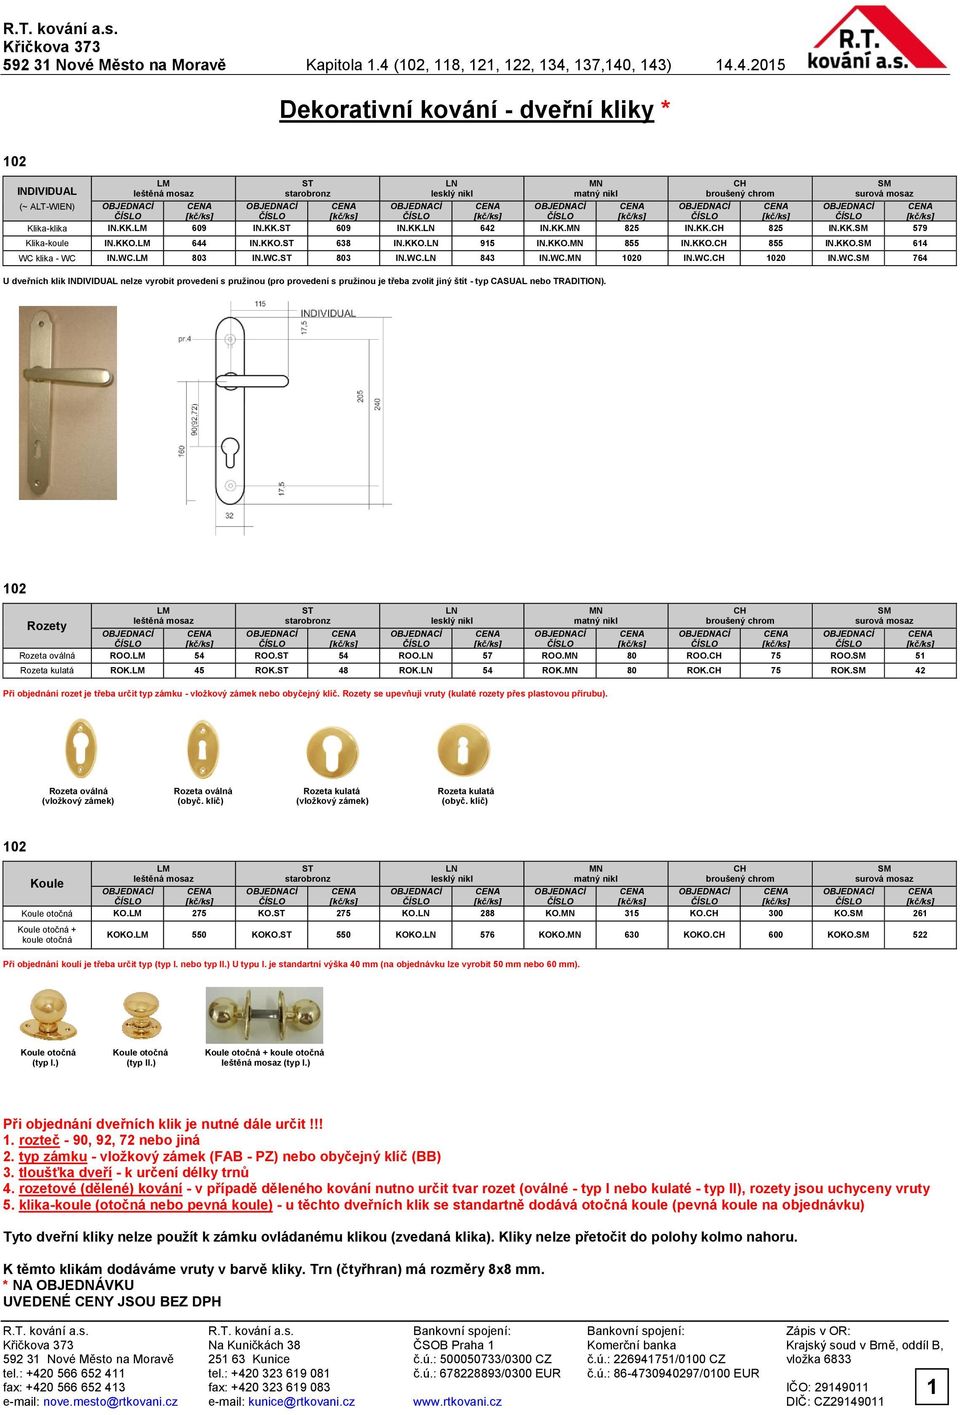 Dekorativní kování kliky na zdvojená okna * - PDF Stažení zdarma